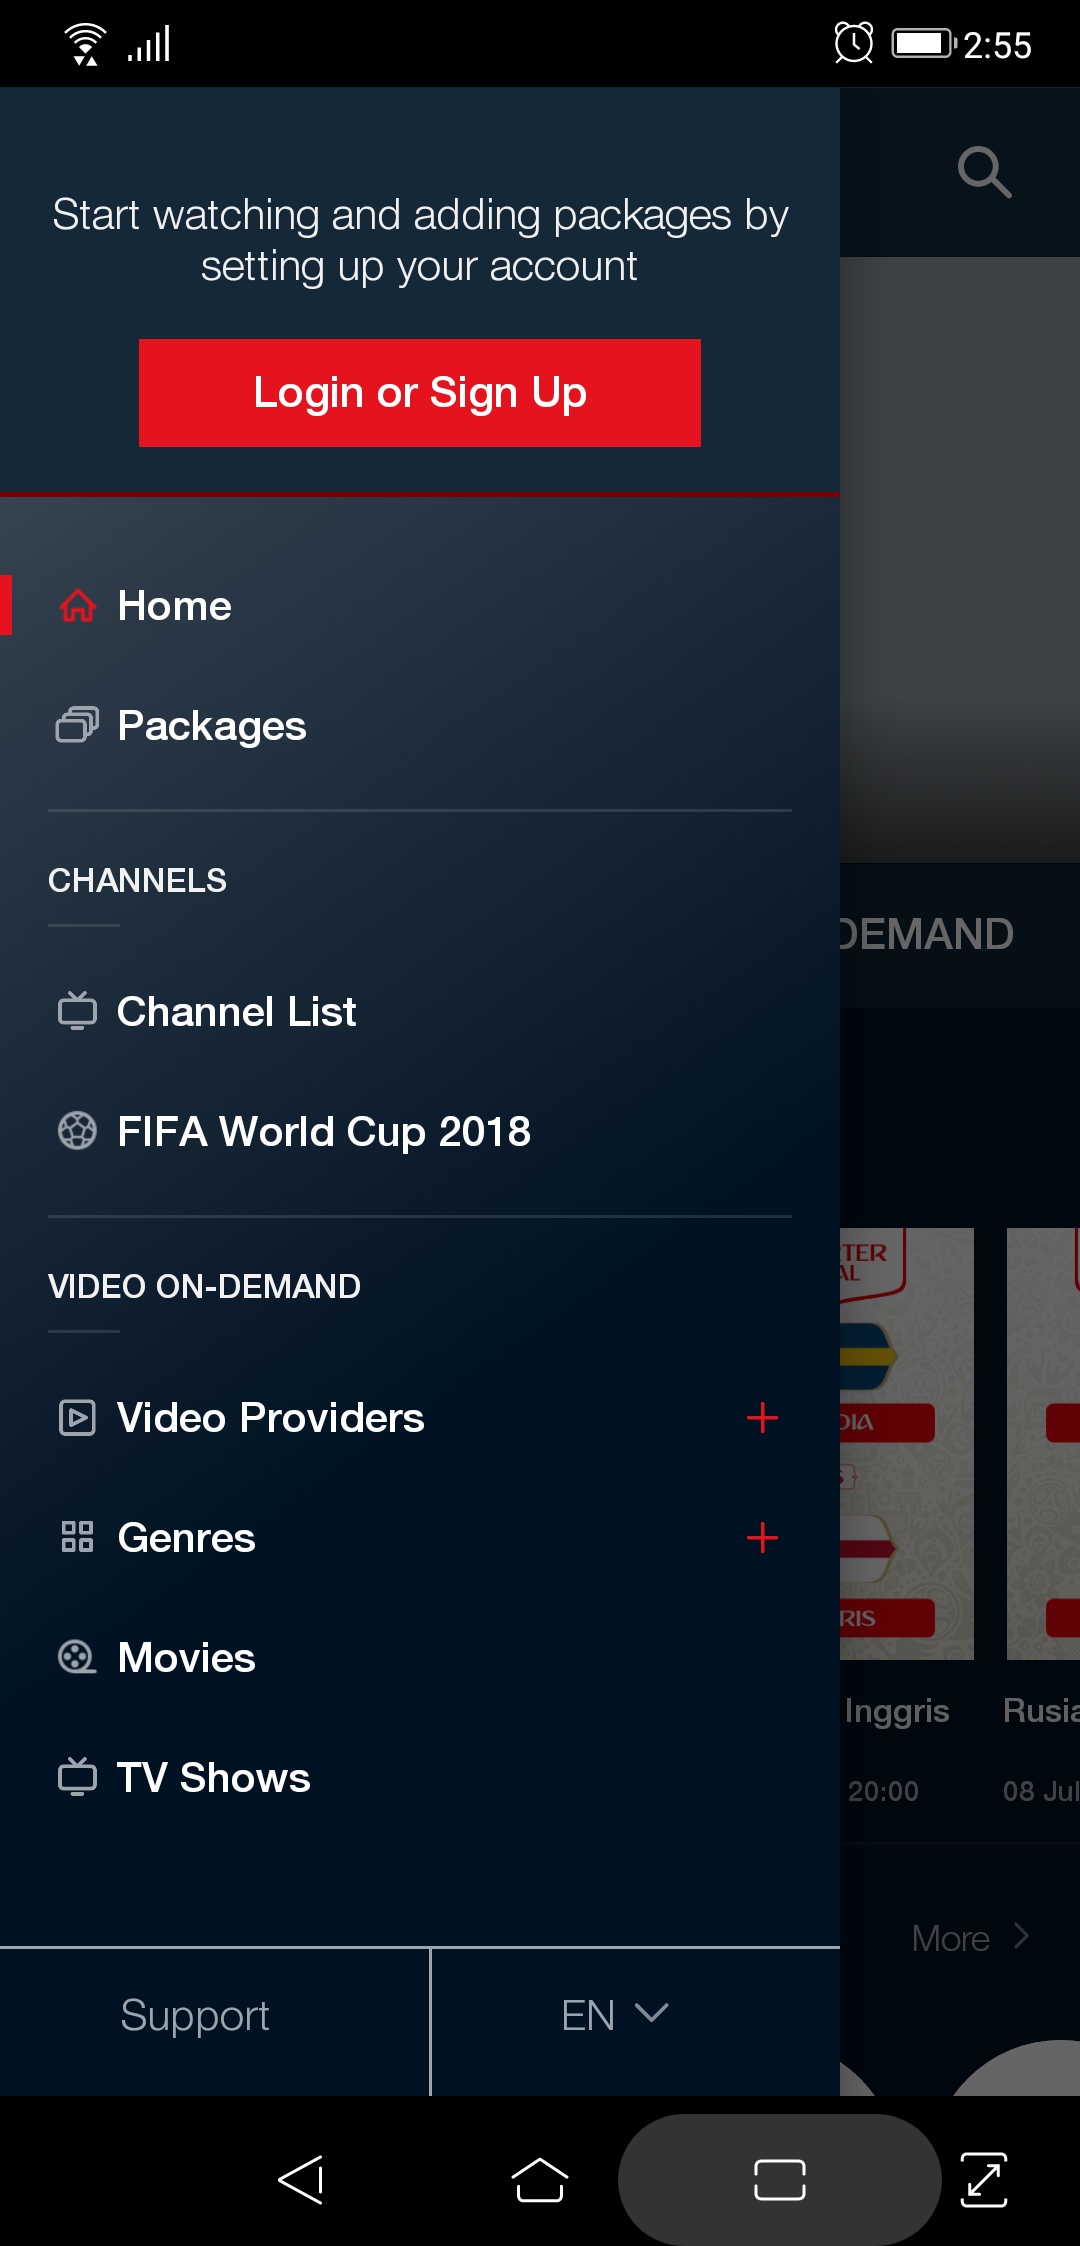 3 Aplikasi untuk Saksikan Pertandingan Piala Dunia 2018 Lewat Smartphone